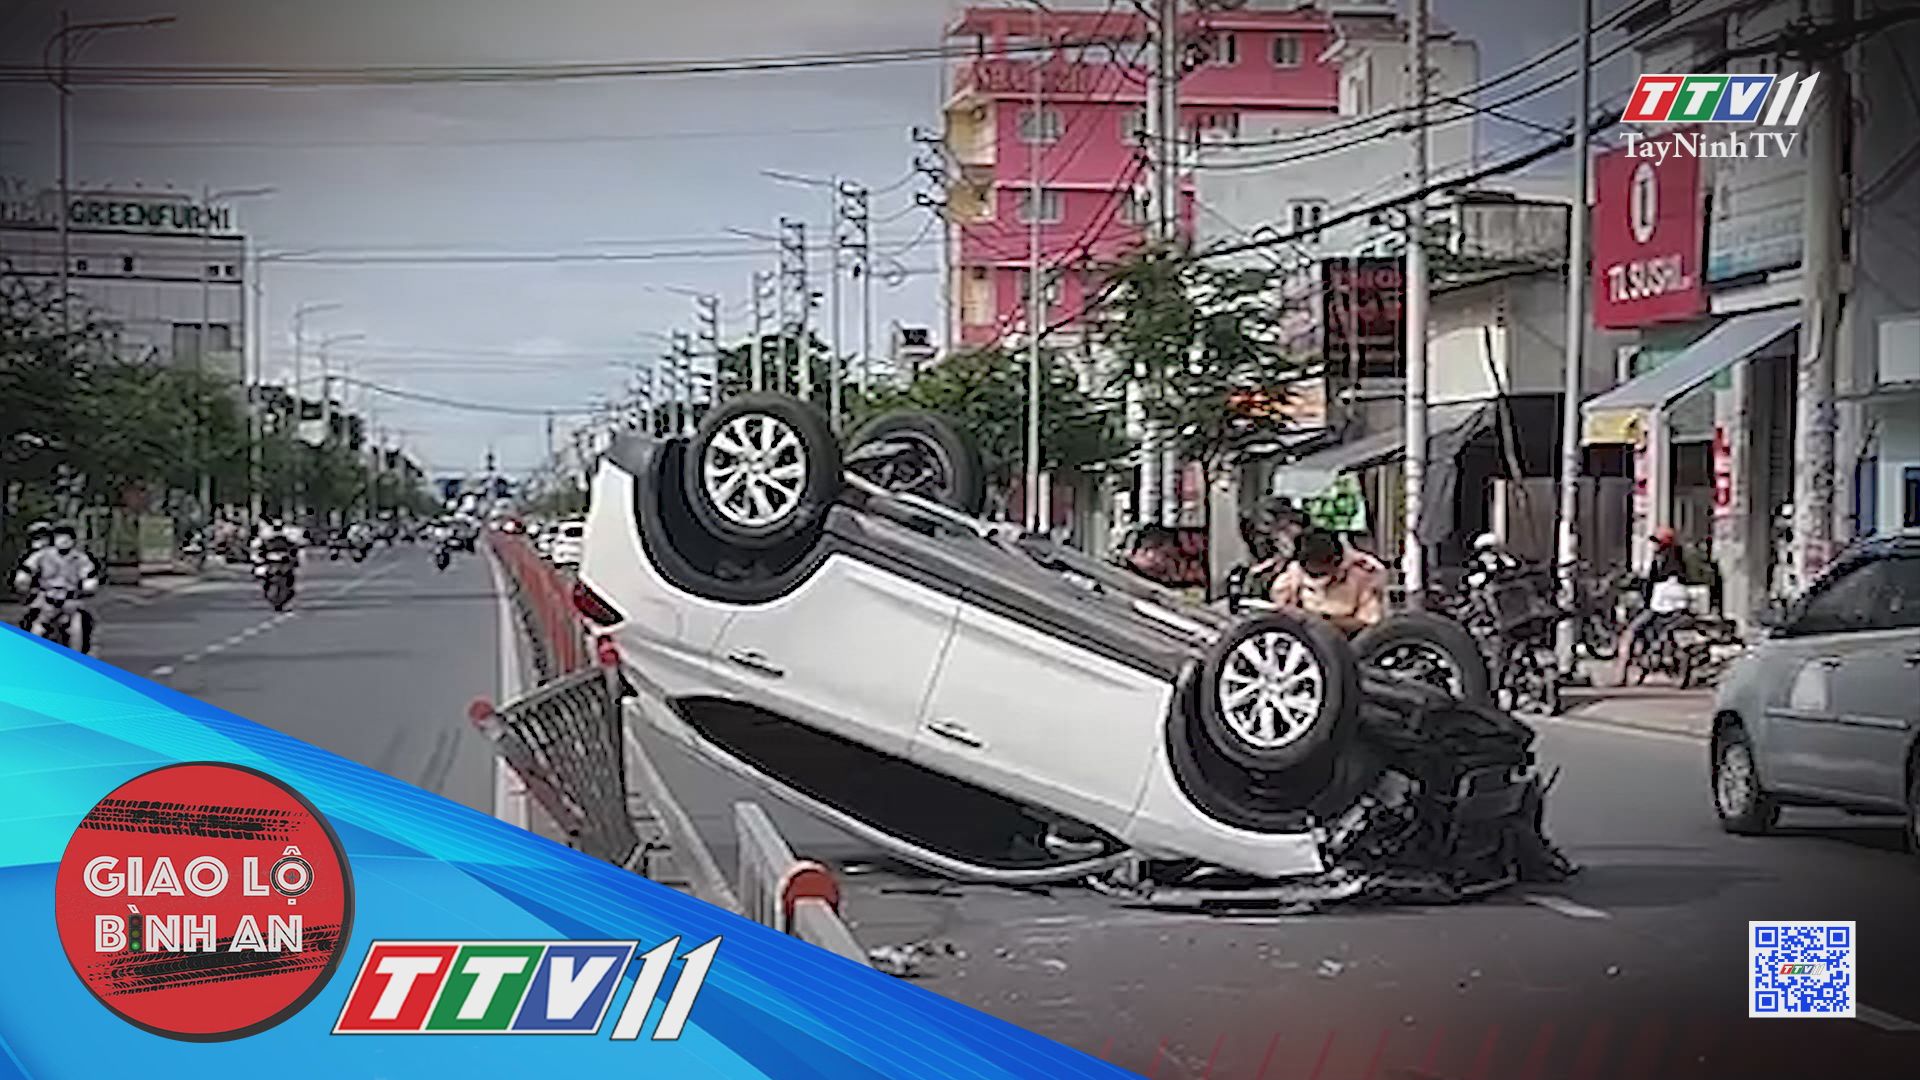 Cảnh báo TNGT nghiêm trọng ở vùng ven | Giao lộ bình an | TayNinhTV